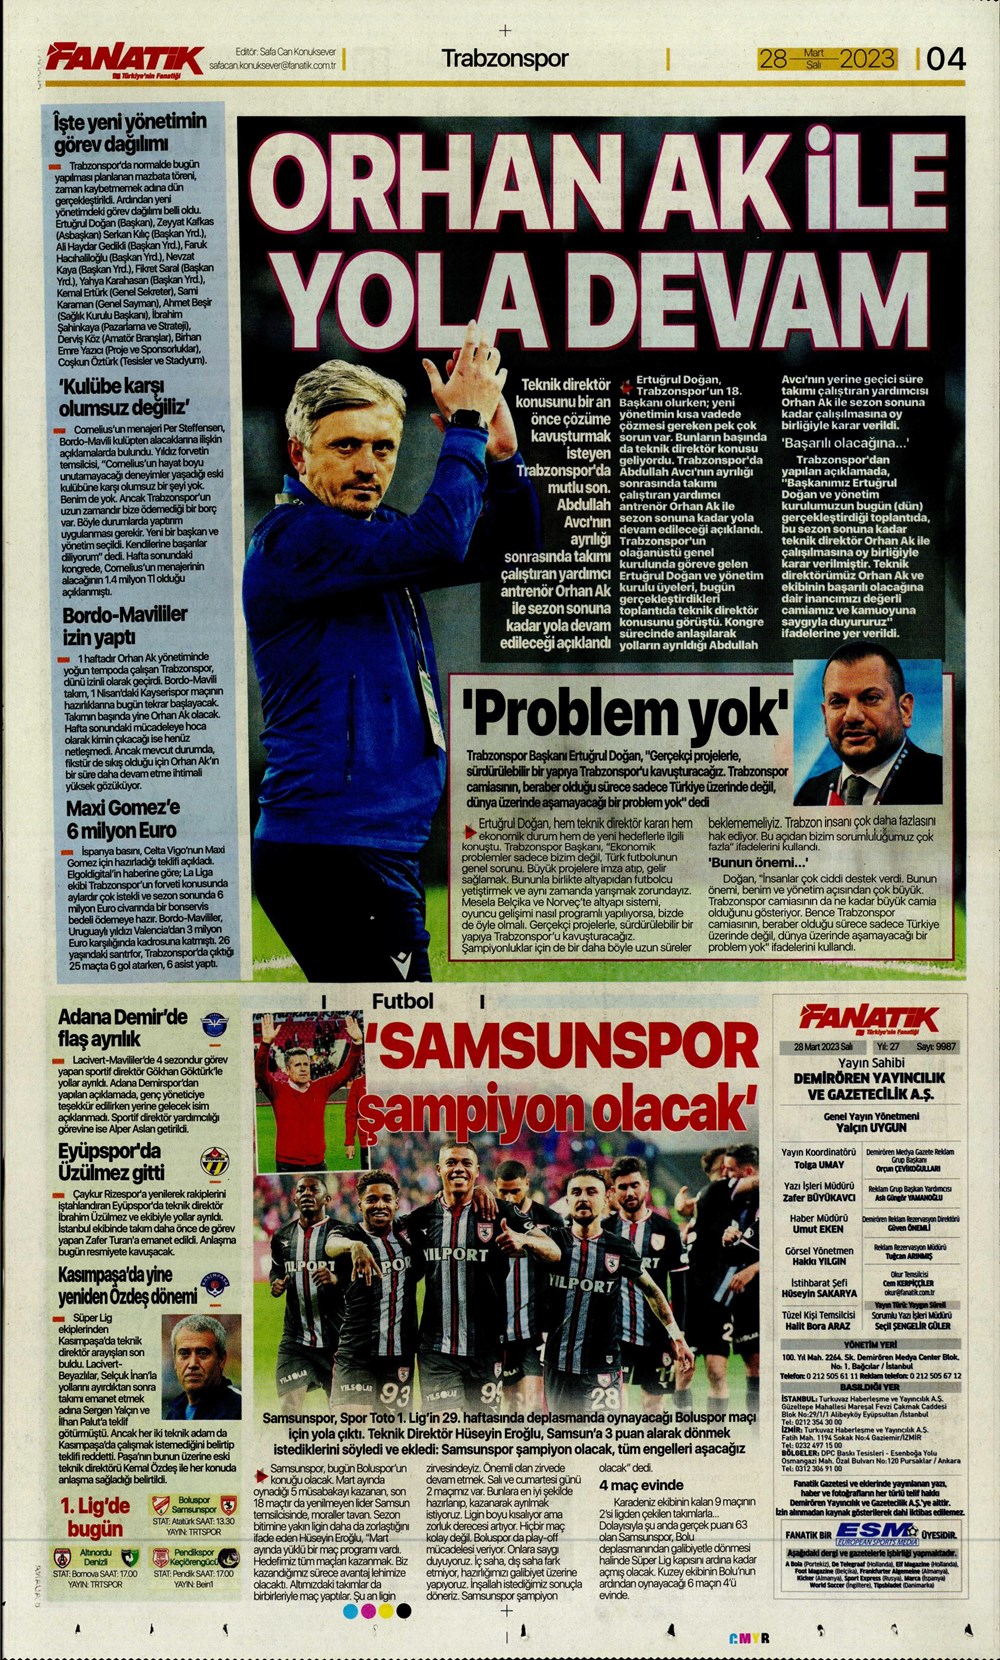 "Vurduğumuz gol olsun" - Sporun manşetleri - 7. Foto